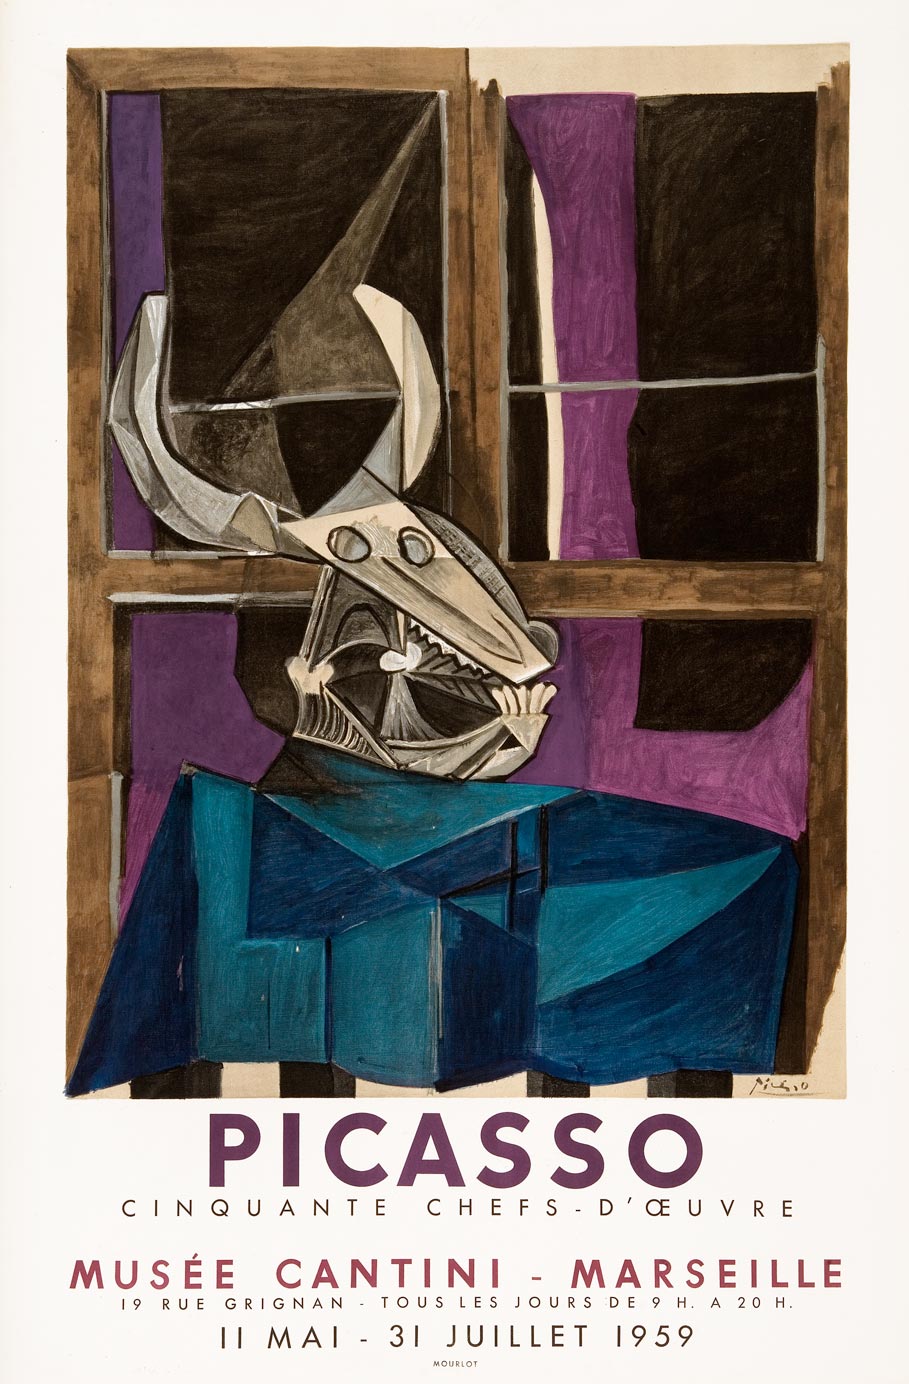 Pablo-Picasso-Affiche-choisir-Cinquante chefs-d’oeuvre-Musée Cantini, Marseille-1959